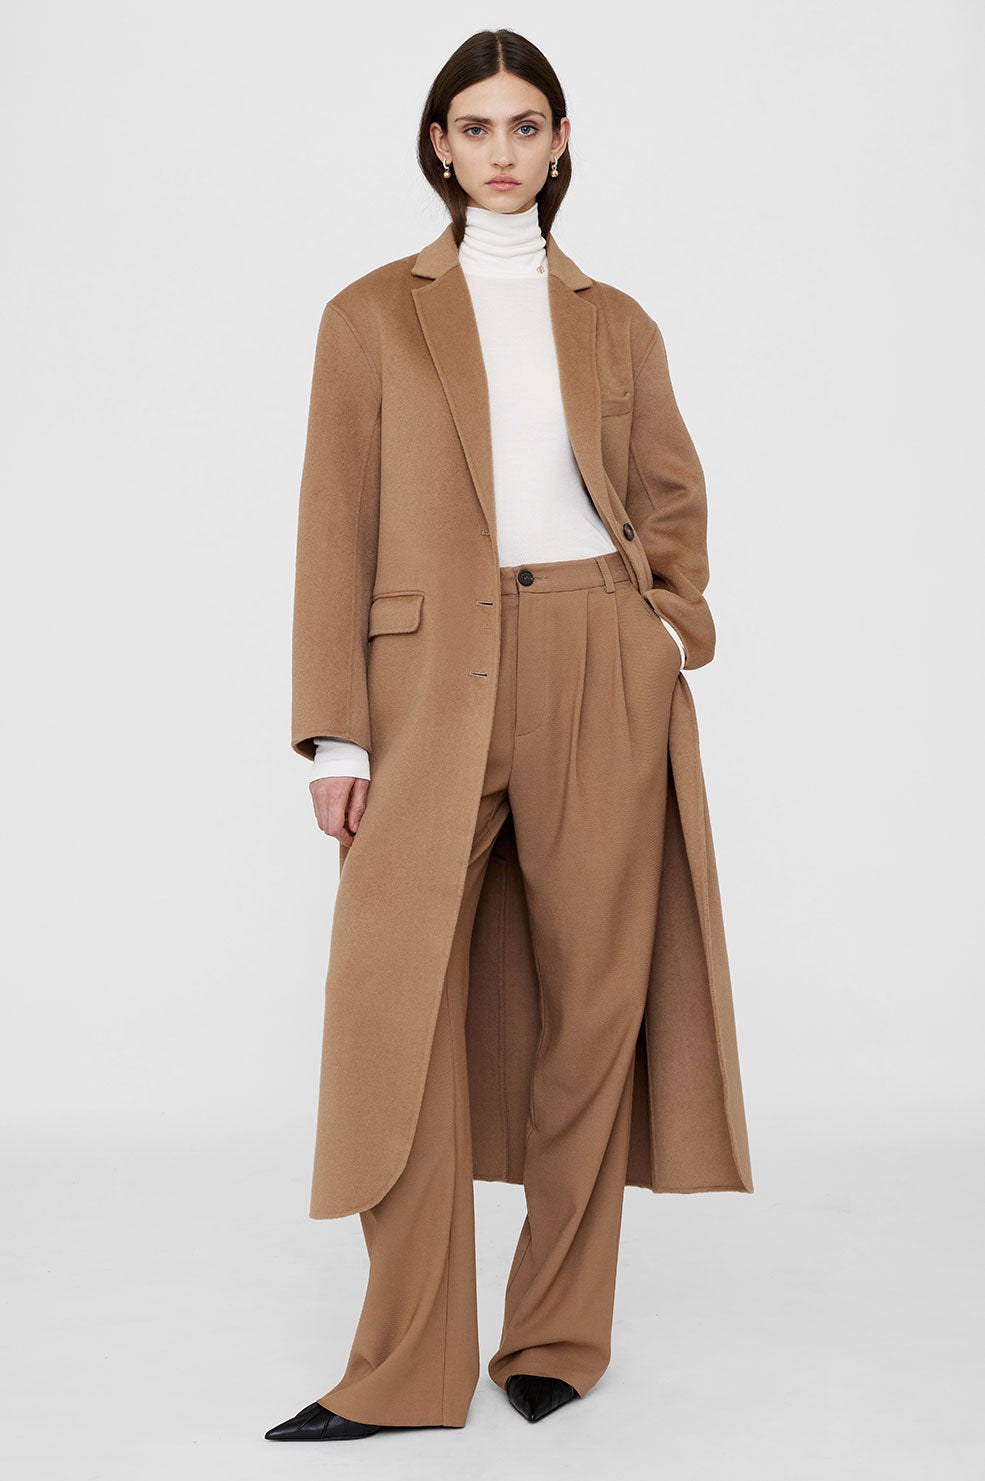 ANINE BING Quinn Coat - Camel Cashmere Blend - On Model Front